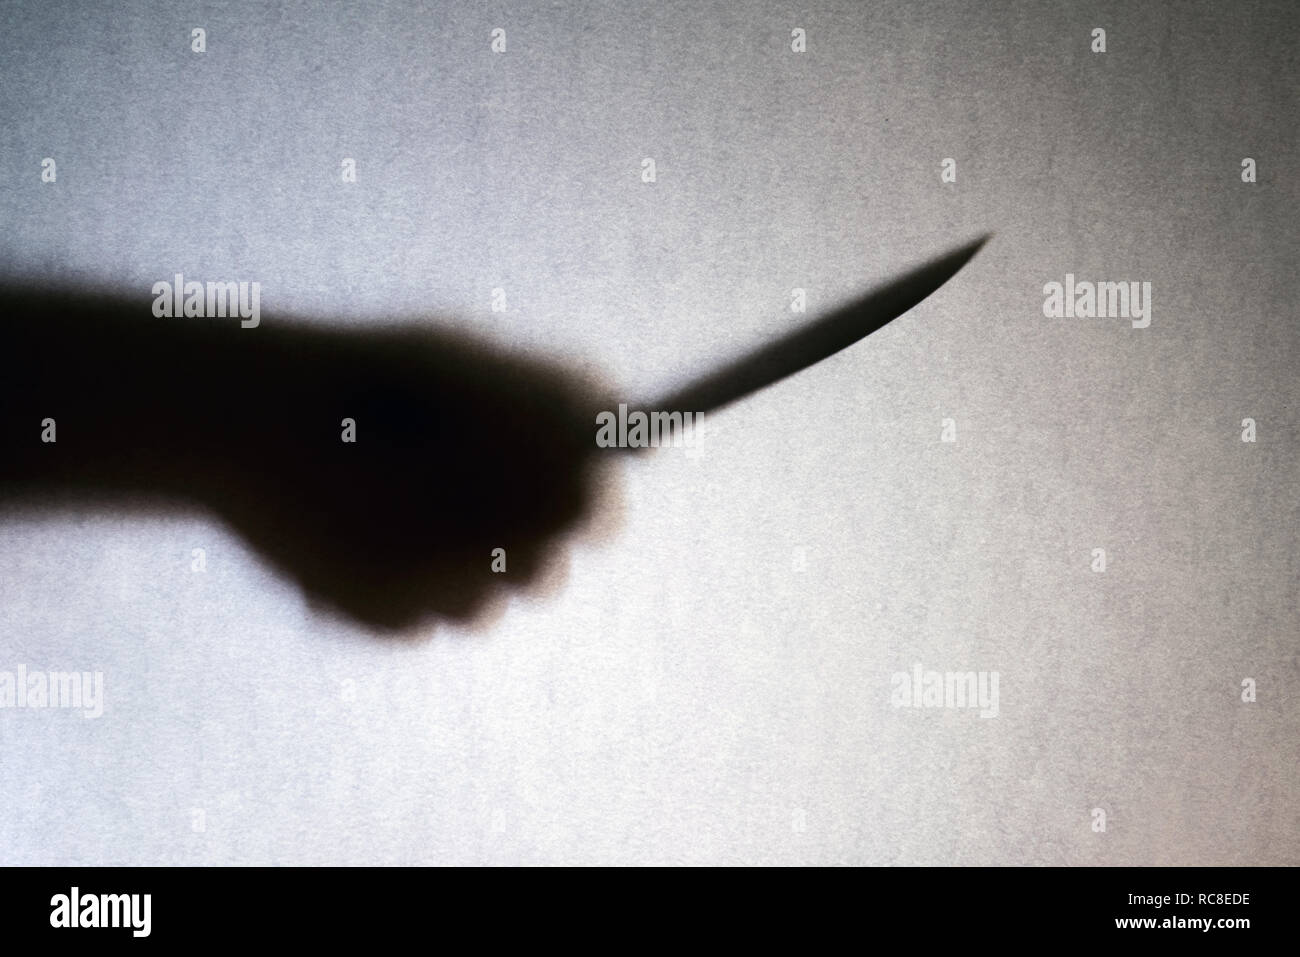 Großes Messer in Räuber hand Silhouette auf grauem Hintergrund. Mord, Raub, Verbrechen Stockfoto